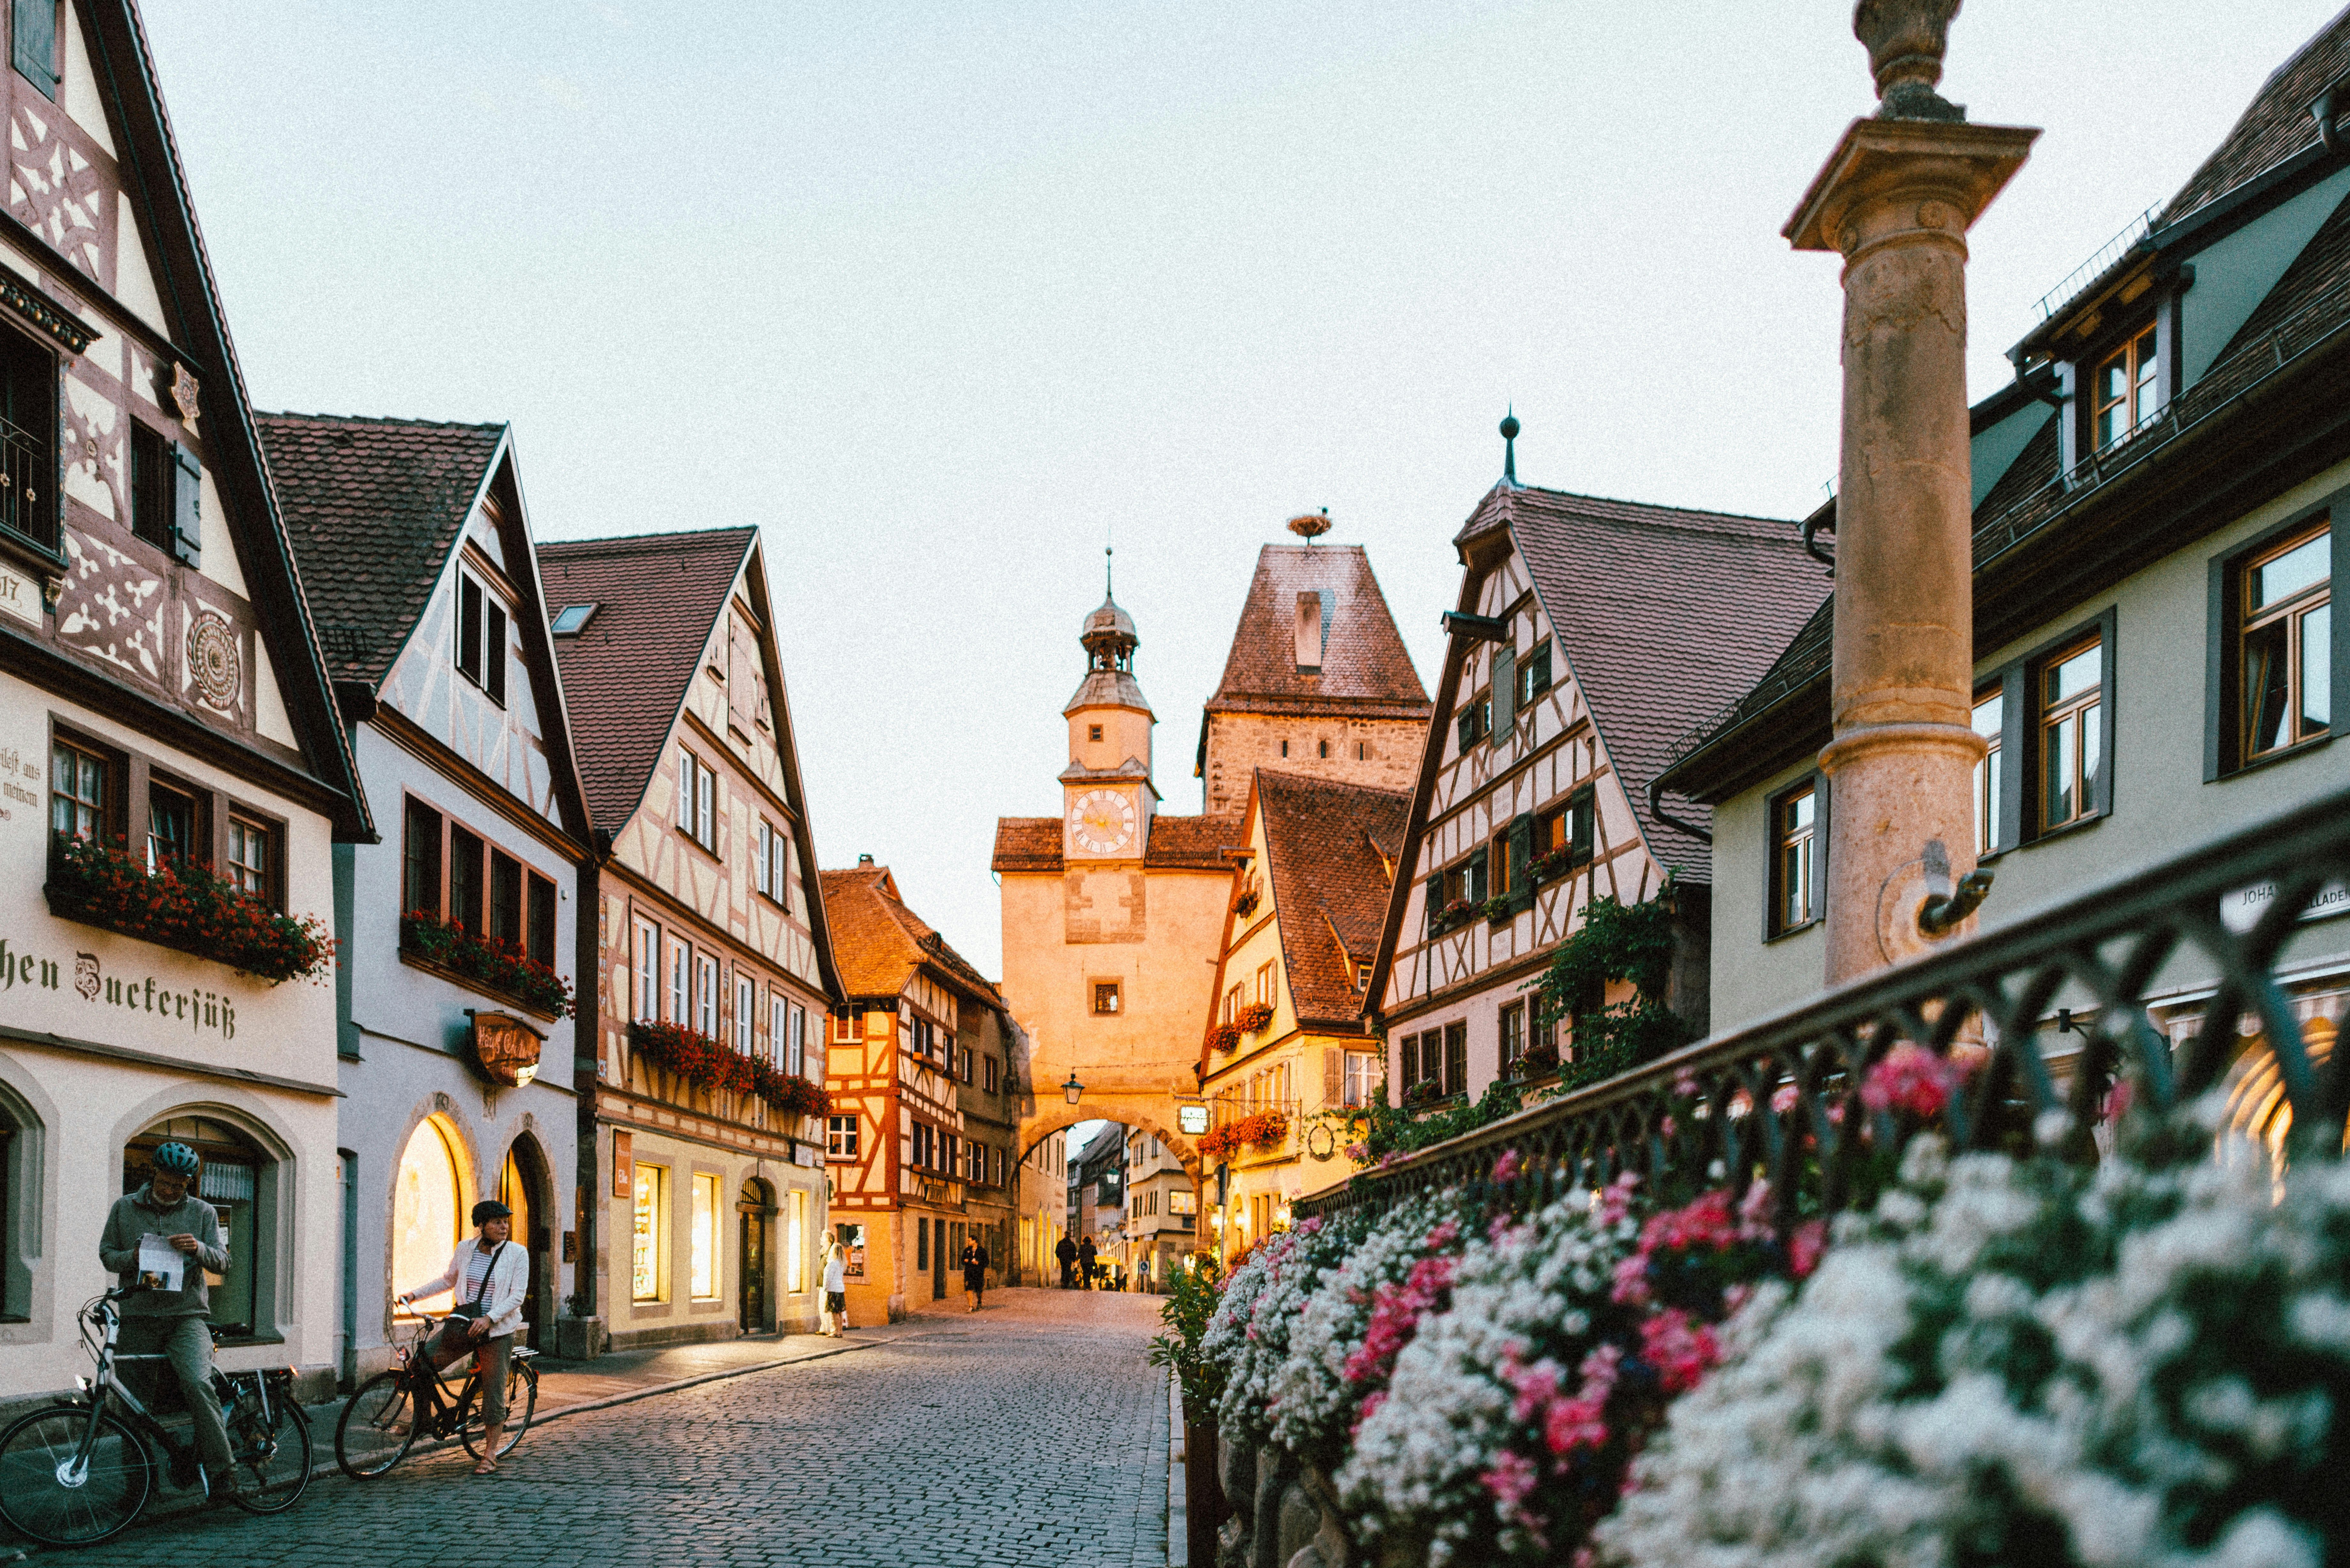 Rothenburg ob der Tauber, Germany - Photo by Roman Kraft, Unsplash